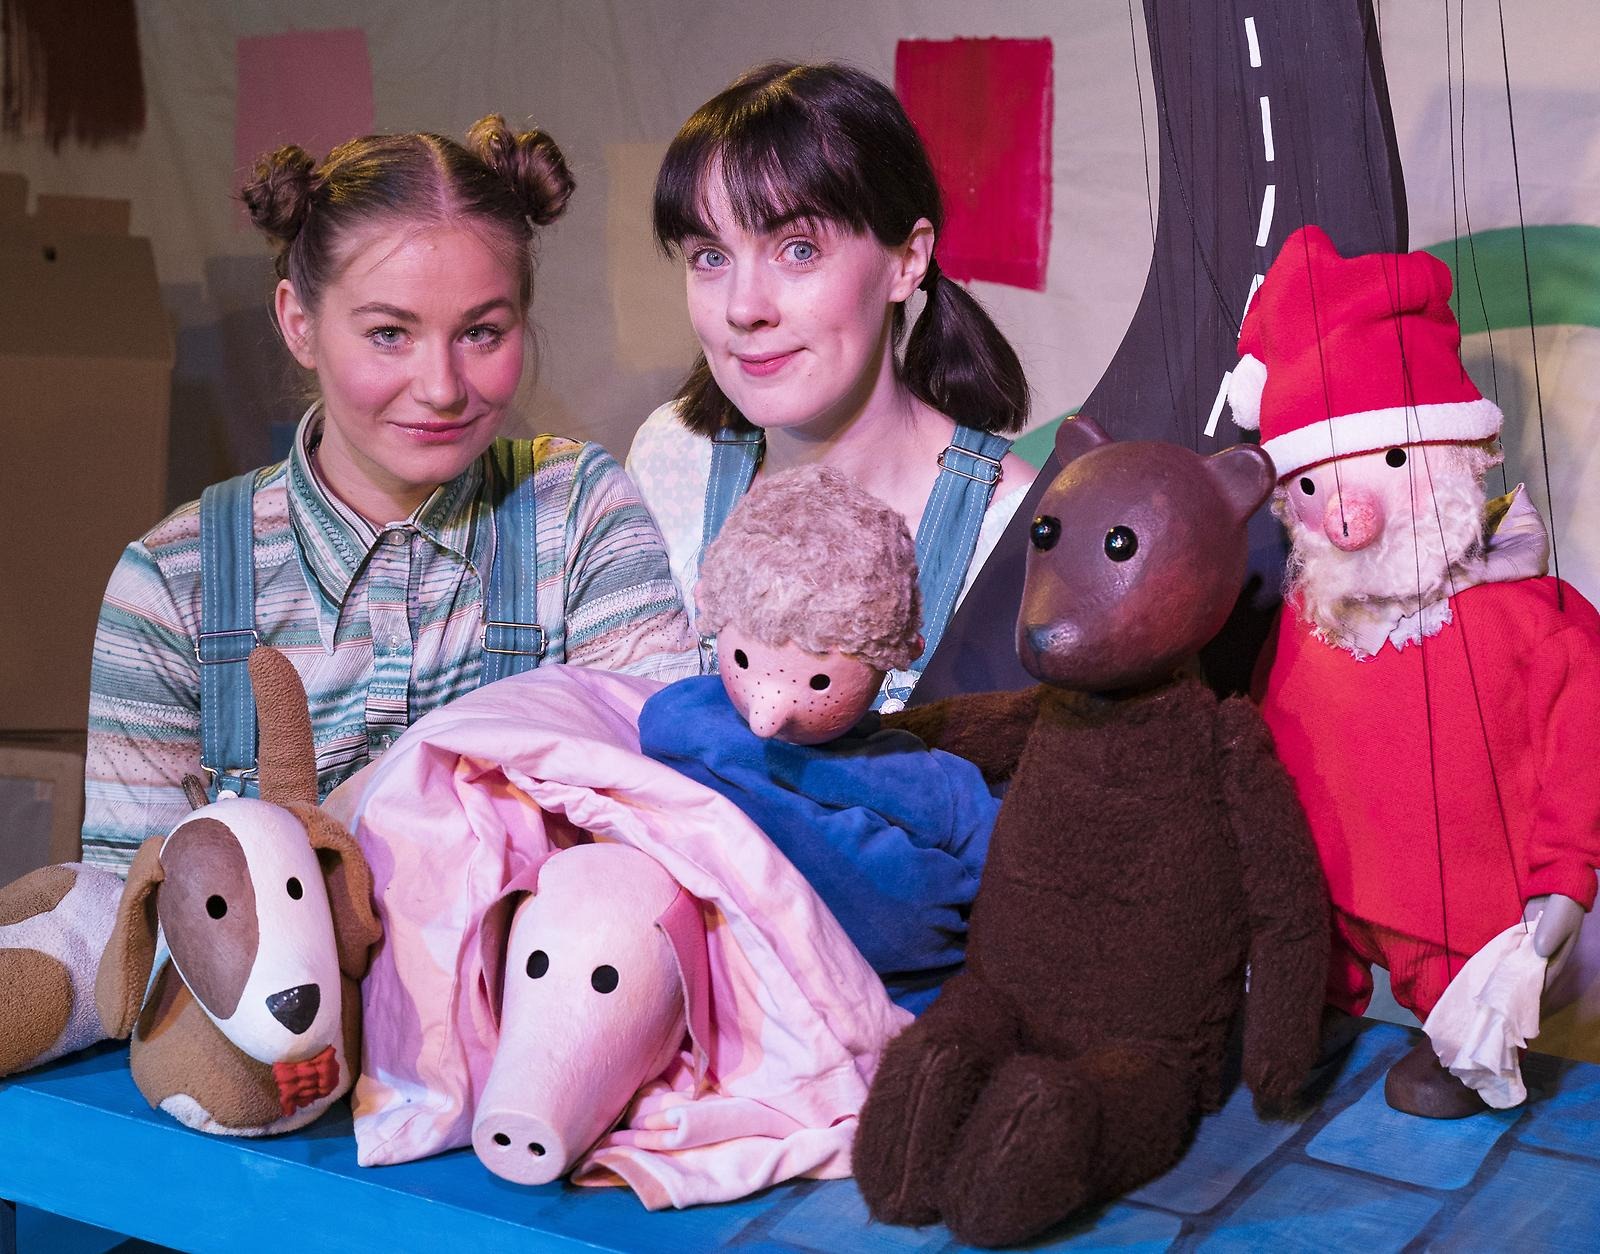 Bild från Boulevardteaterns dockteaterföreställning "Alla får åka med", med två kvinnliga skådespelare och några dockor.